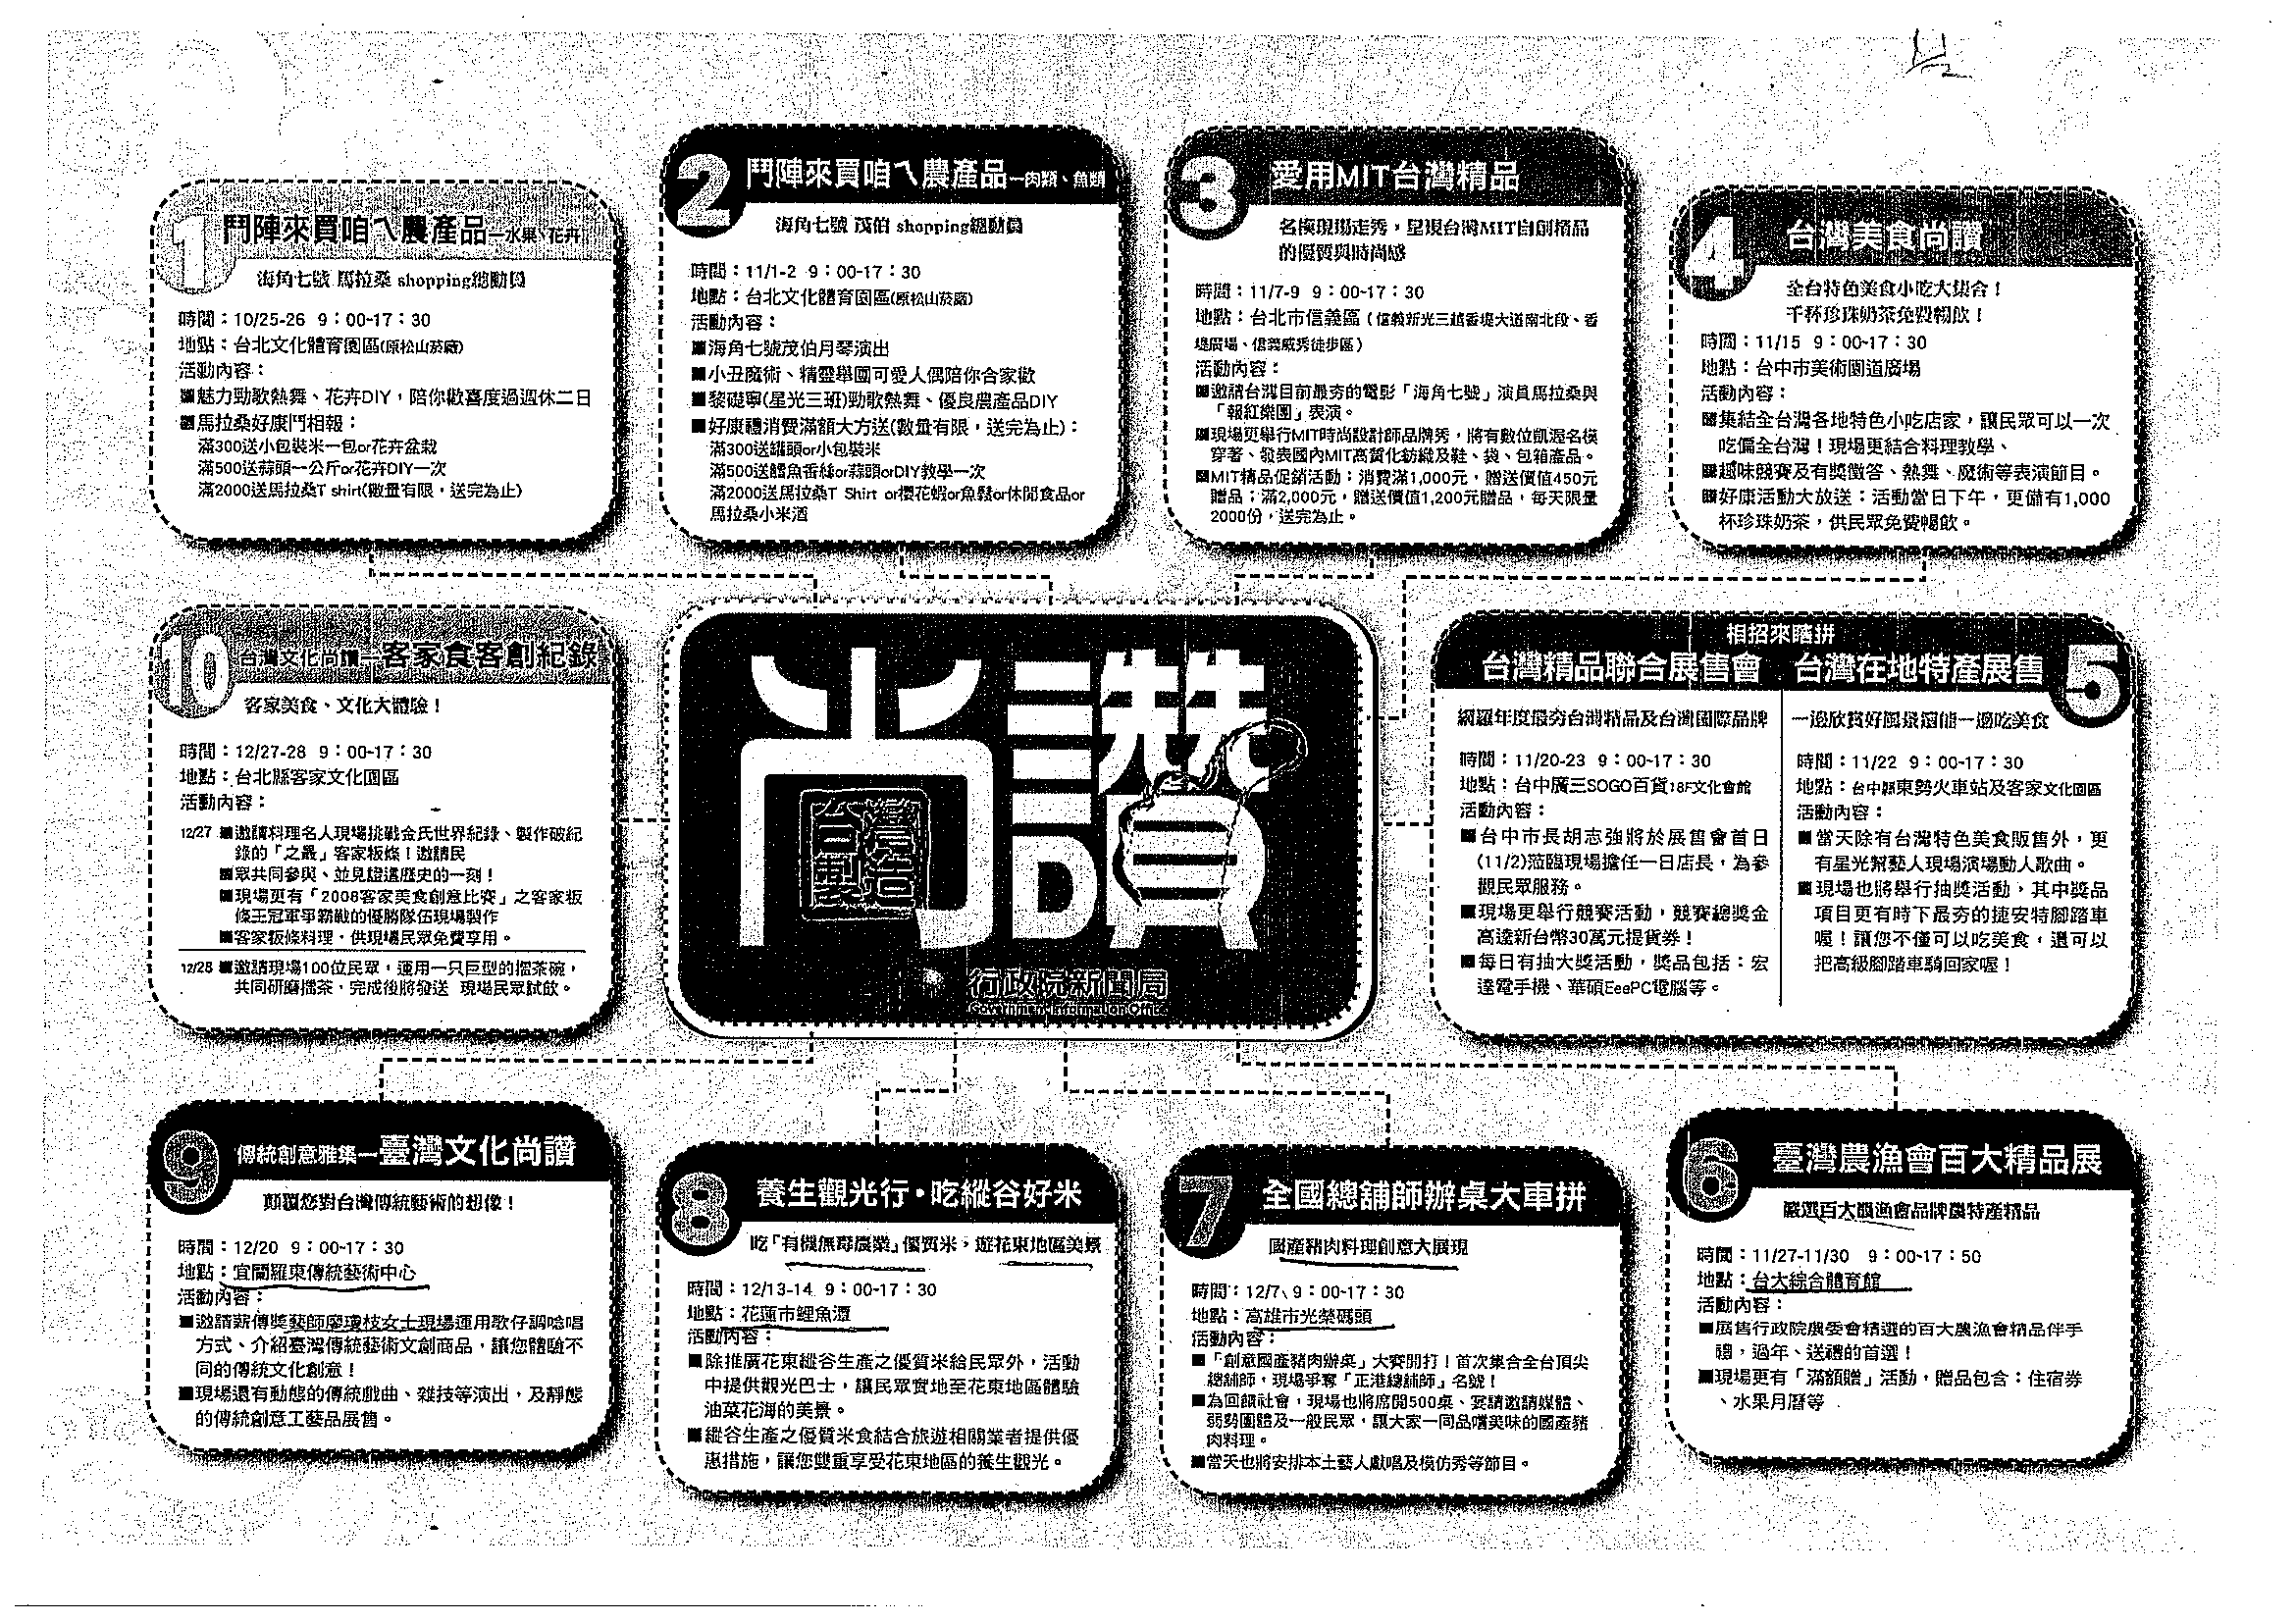 「台灣製造　尚讚」系列活動規劃表